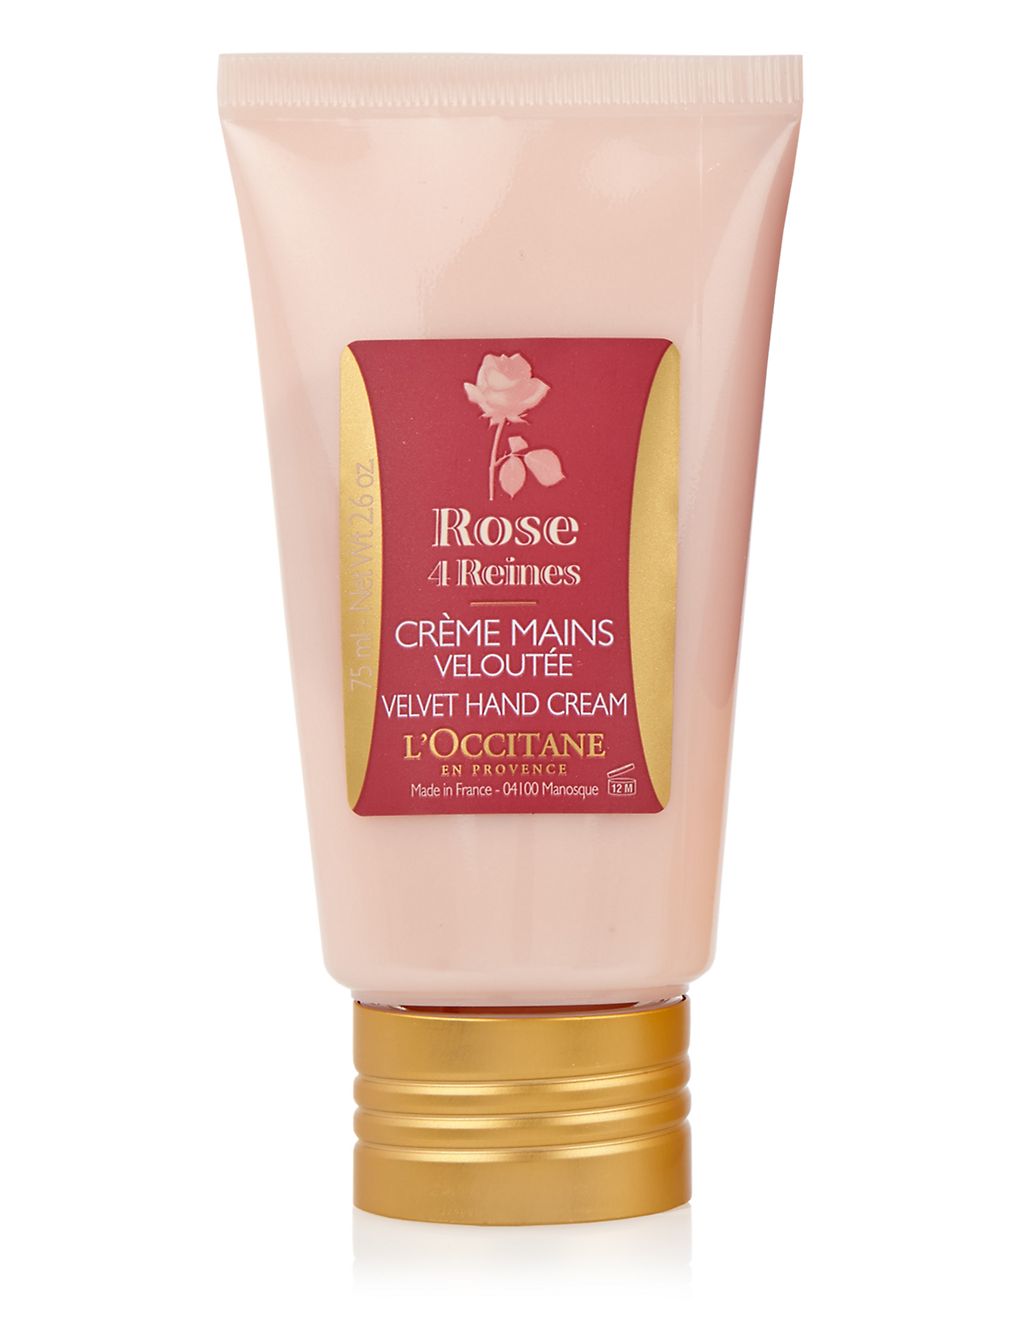 Rose 4 Reines Velvet Hand Cream 75ml 2 of 2